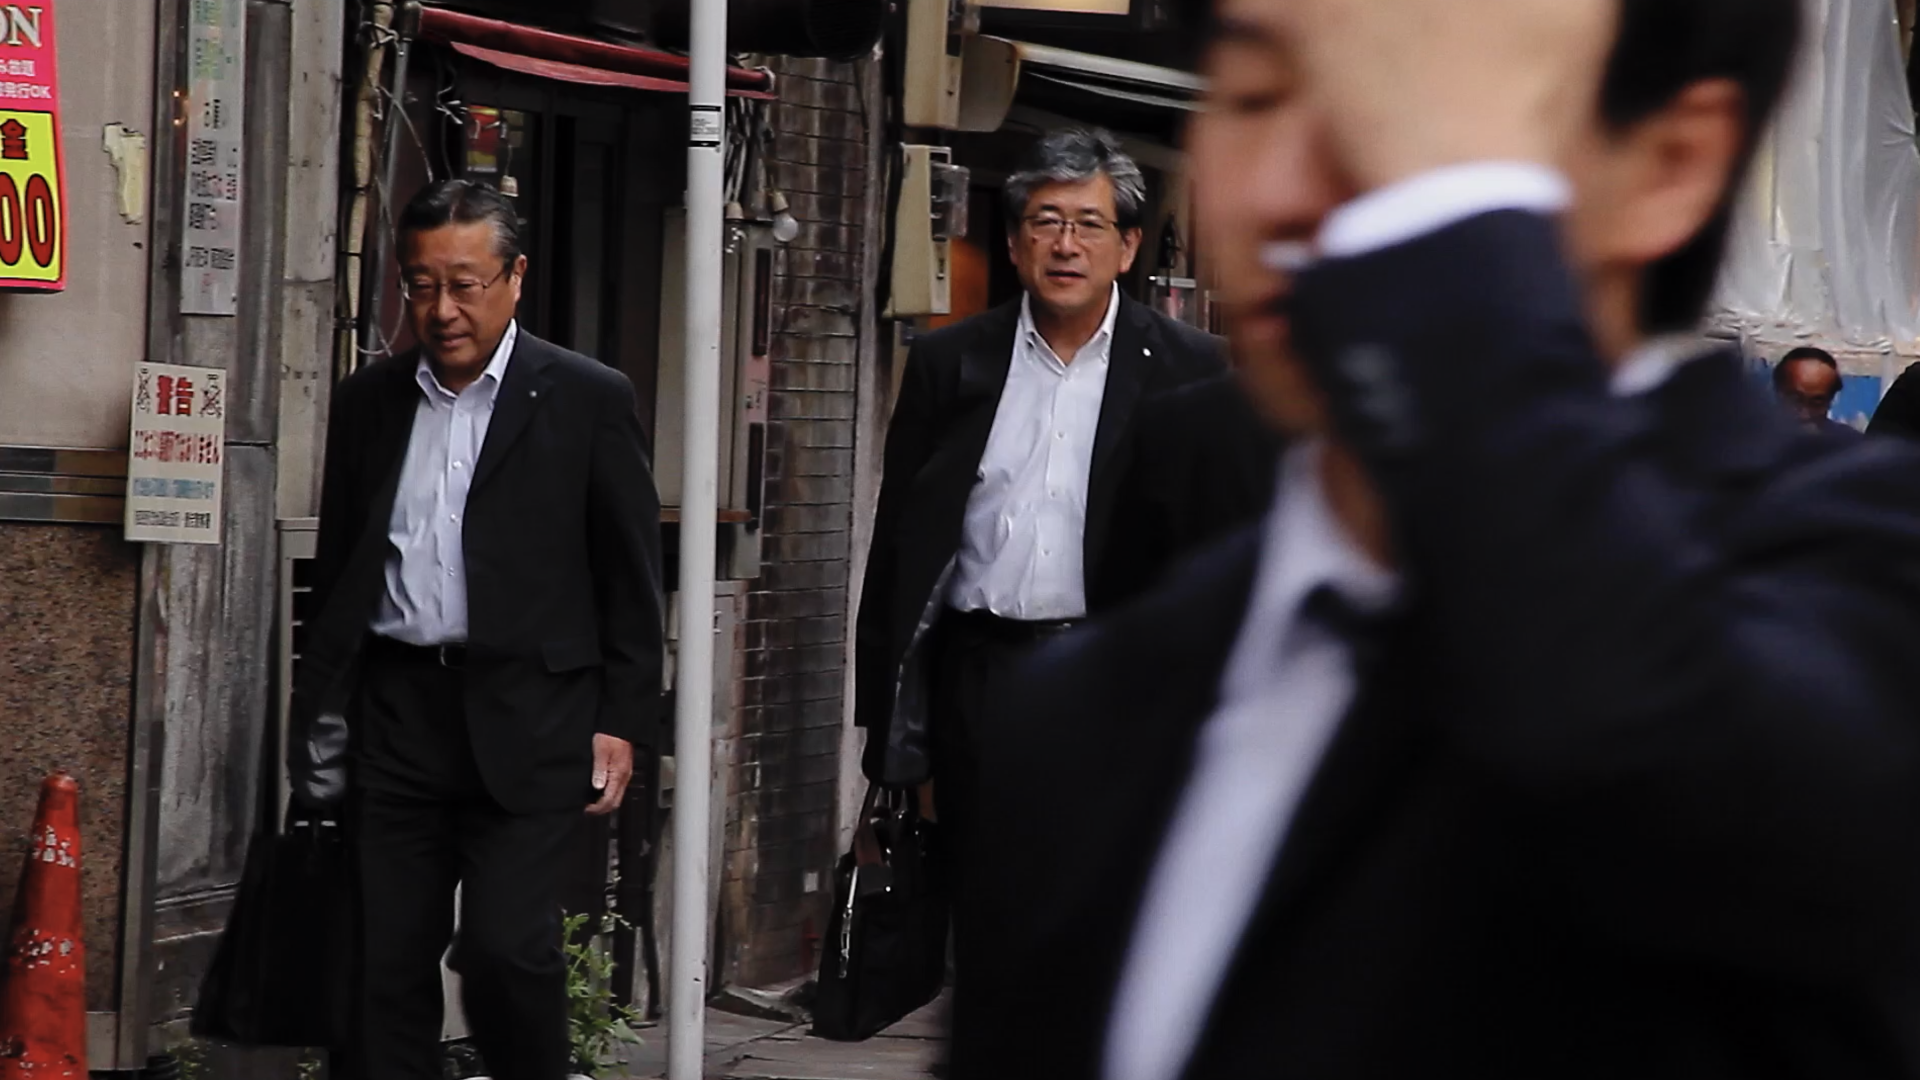 Filmstill aus Salaryman: Geschäftsleute in Anzügen und mit Aktentaschen laufen durch eine Straße.